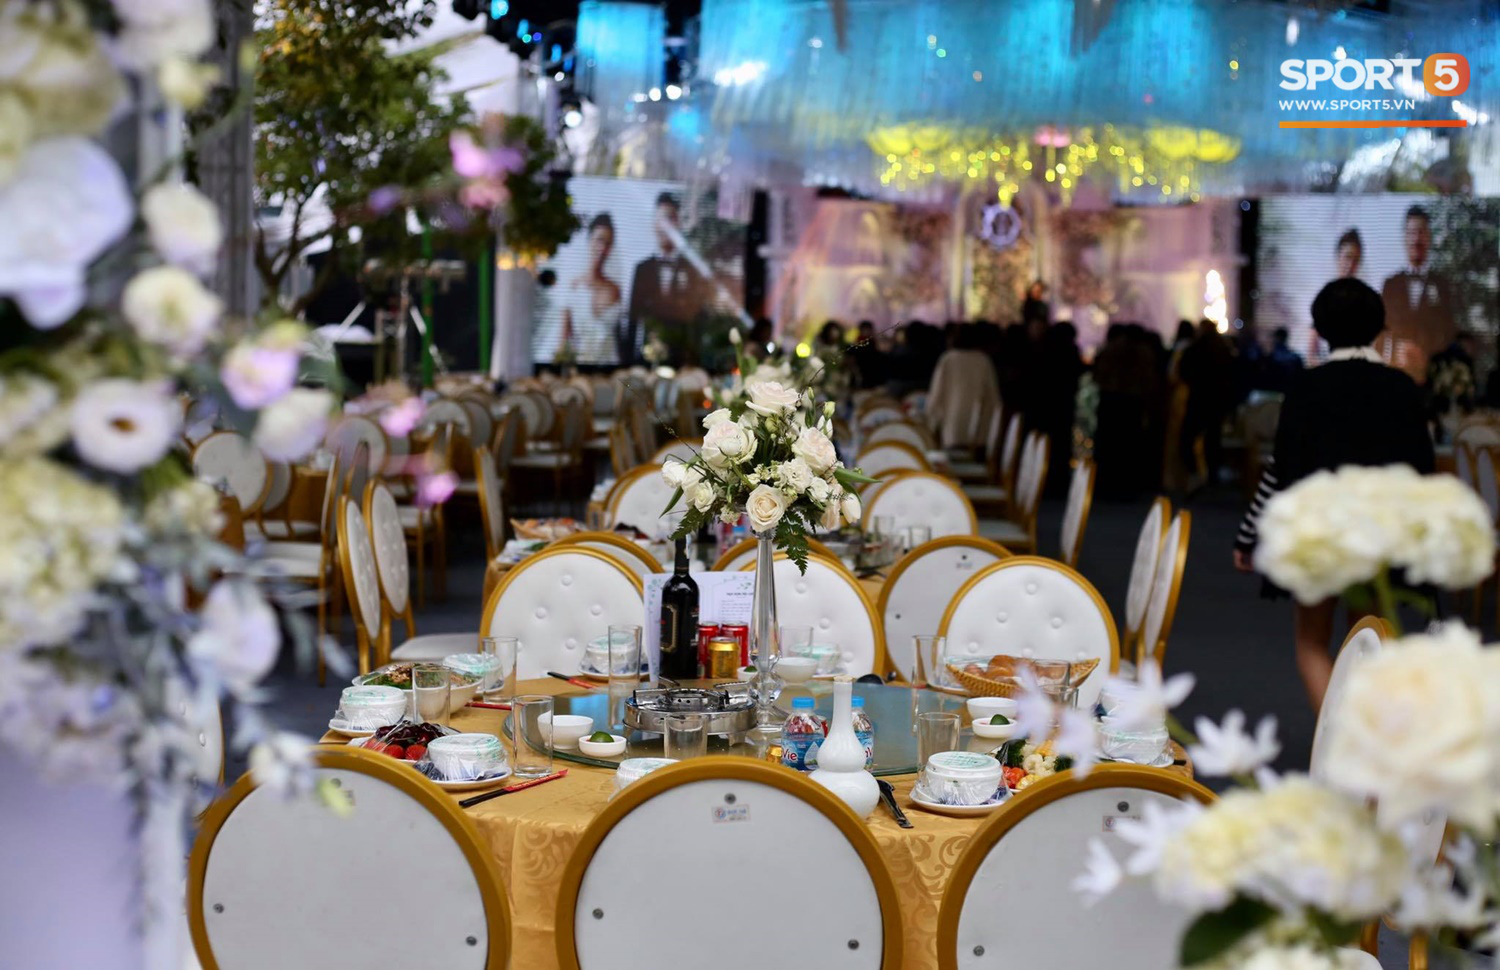 Đám cưới Tiến Dũng và Khánh Linh ở Bắc Ninh: Mời hơn 1500 khách, quà cảm ơn trao tay ngọt ngào - Ảnh 6.